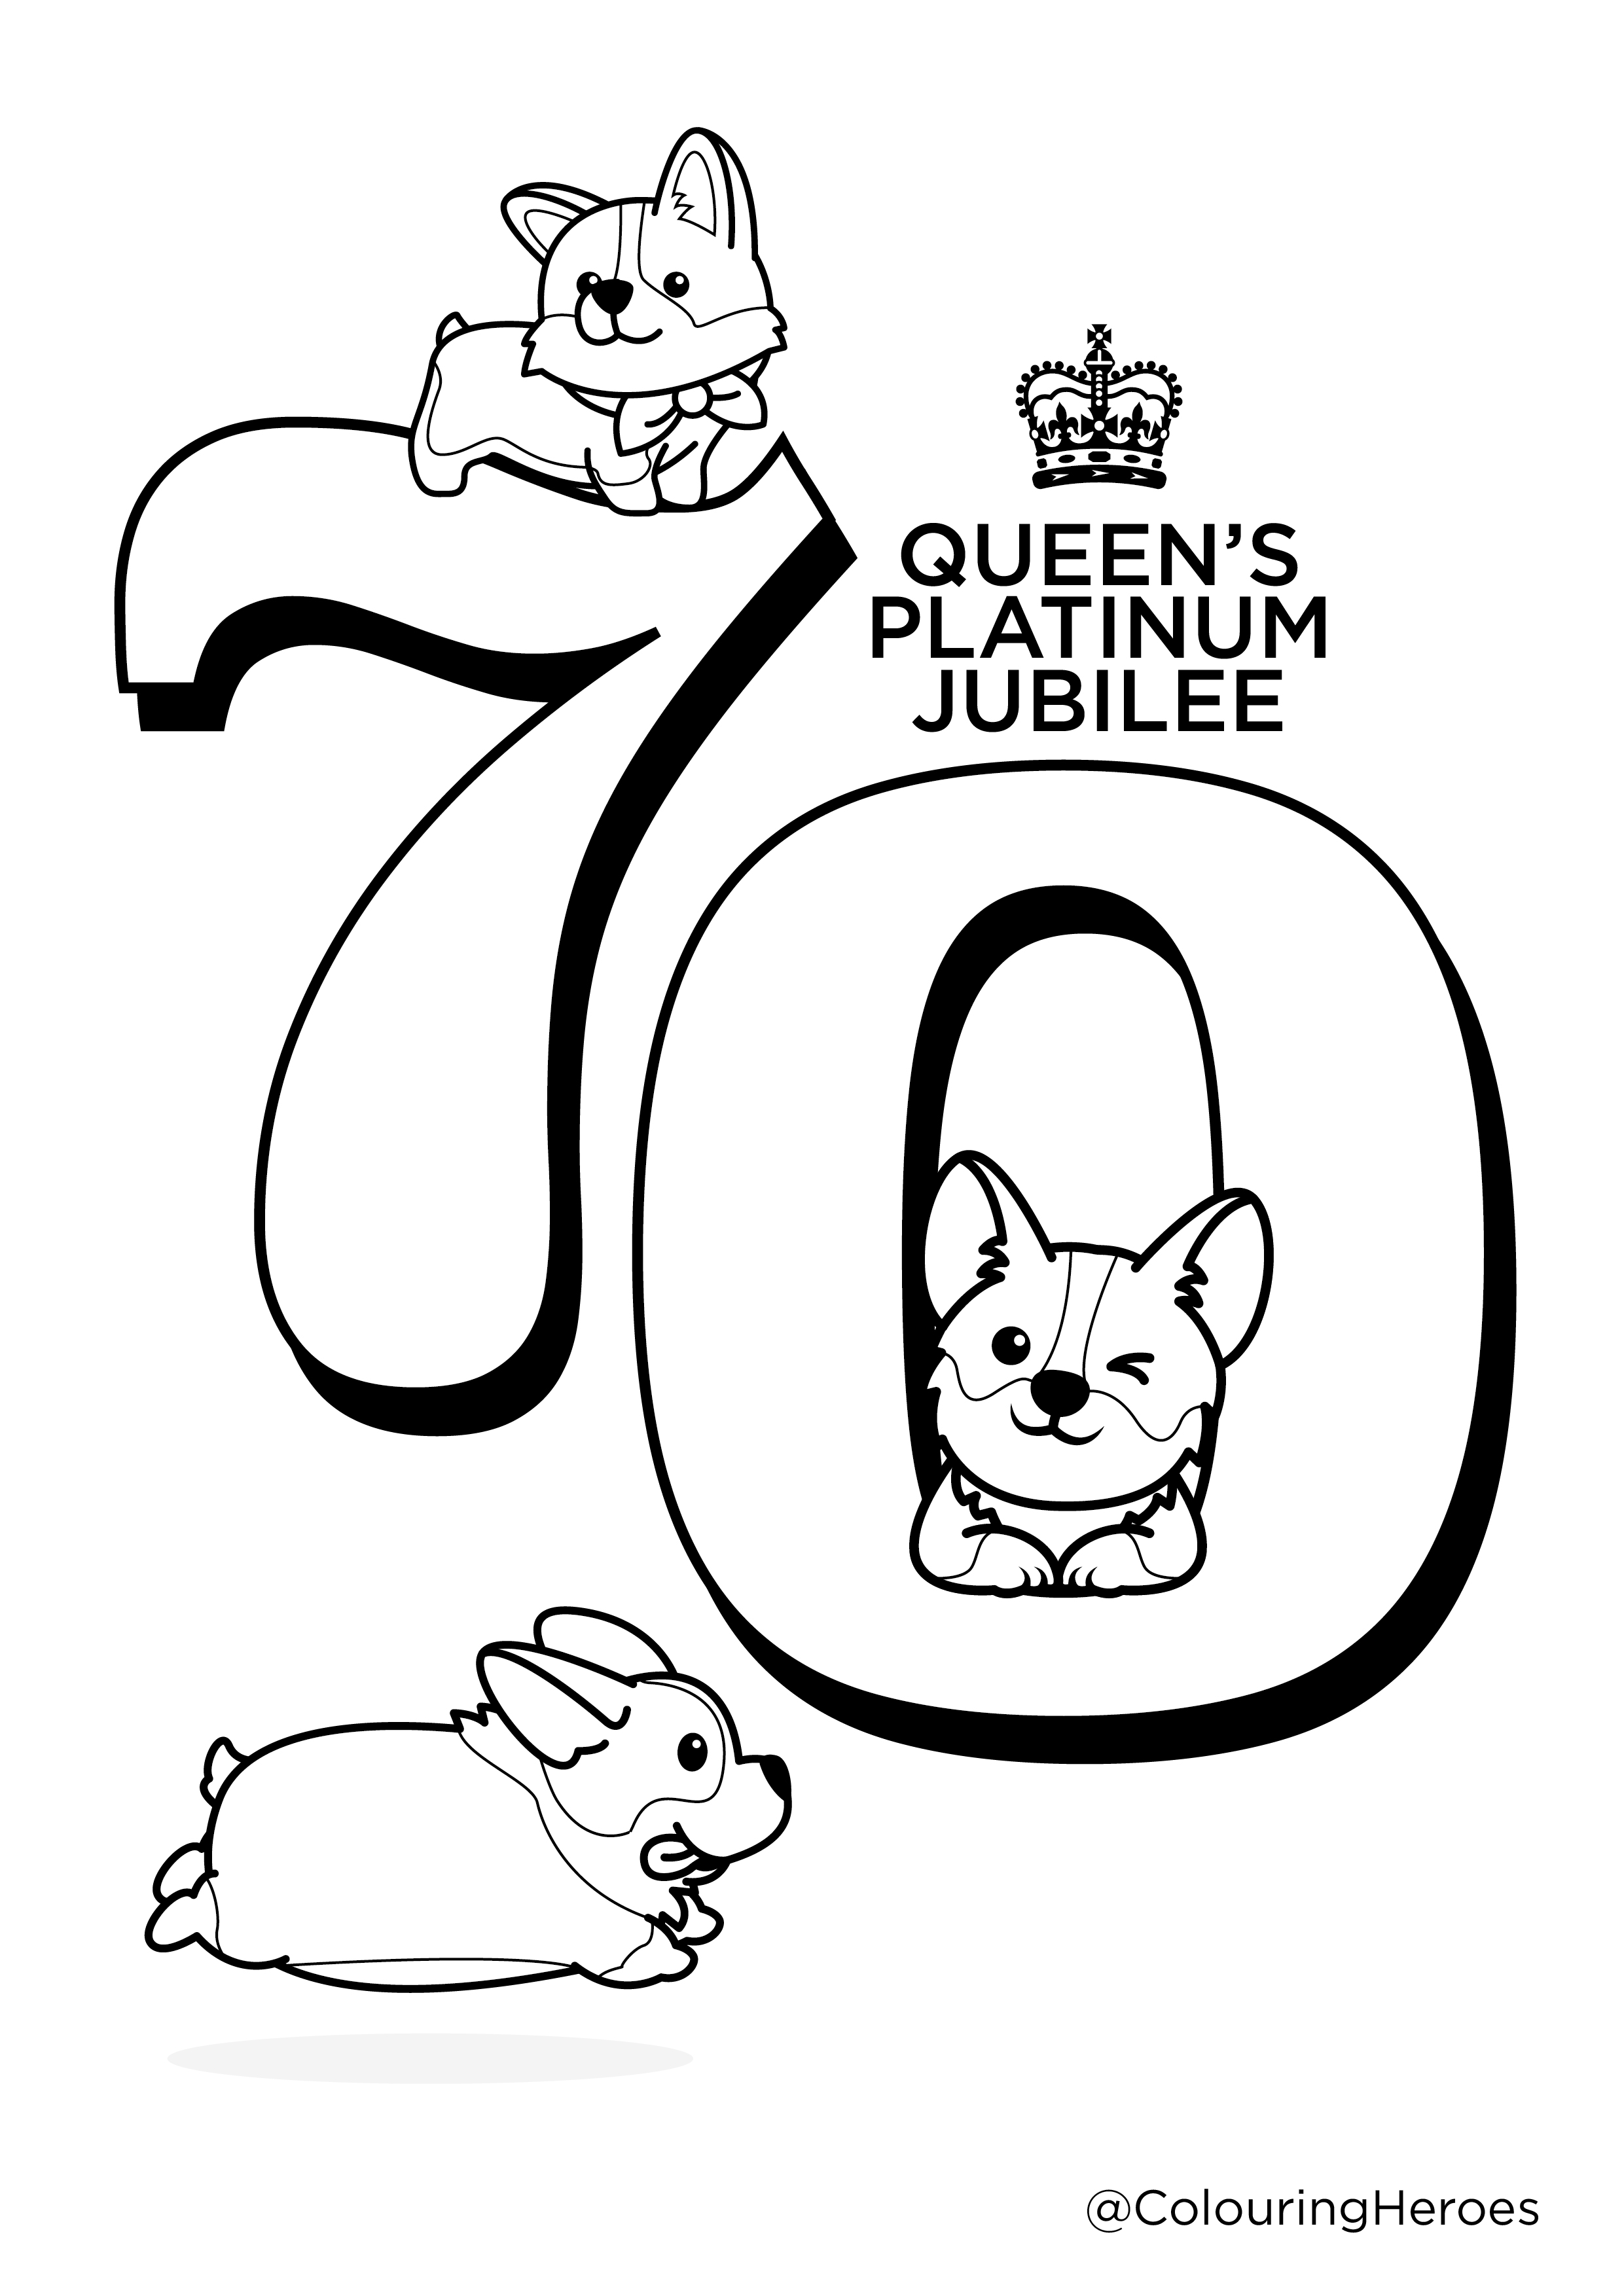 Queen Elizabeth’s Platinum Jubilee – My English Links